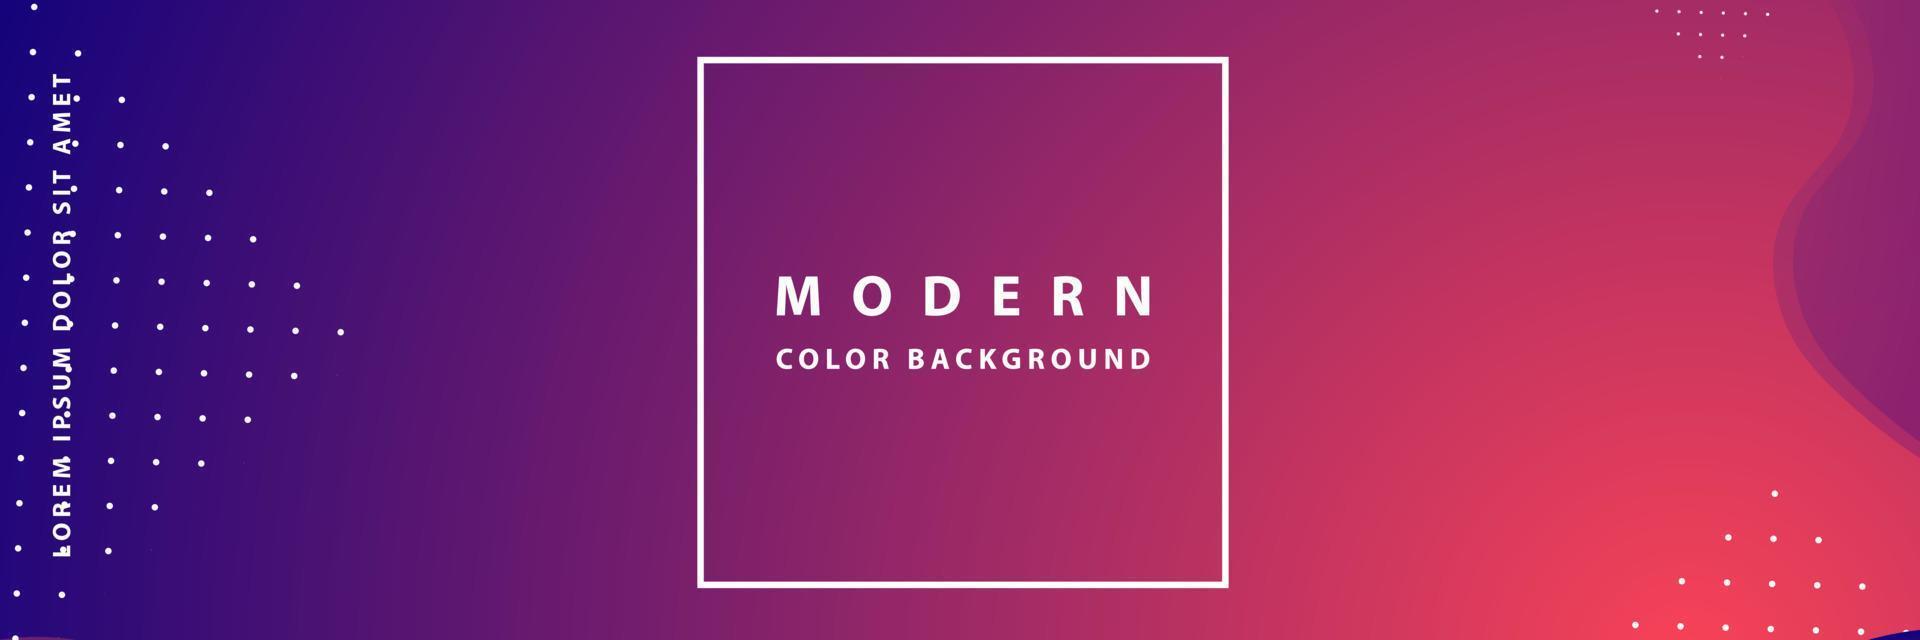 abstracte achtergrondbanner met kleur creatief digitaal licht modern vector